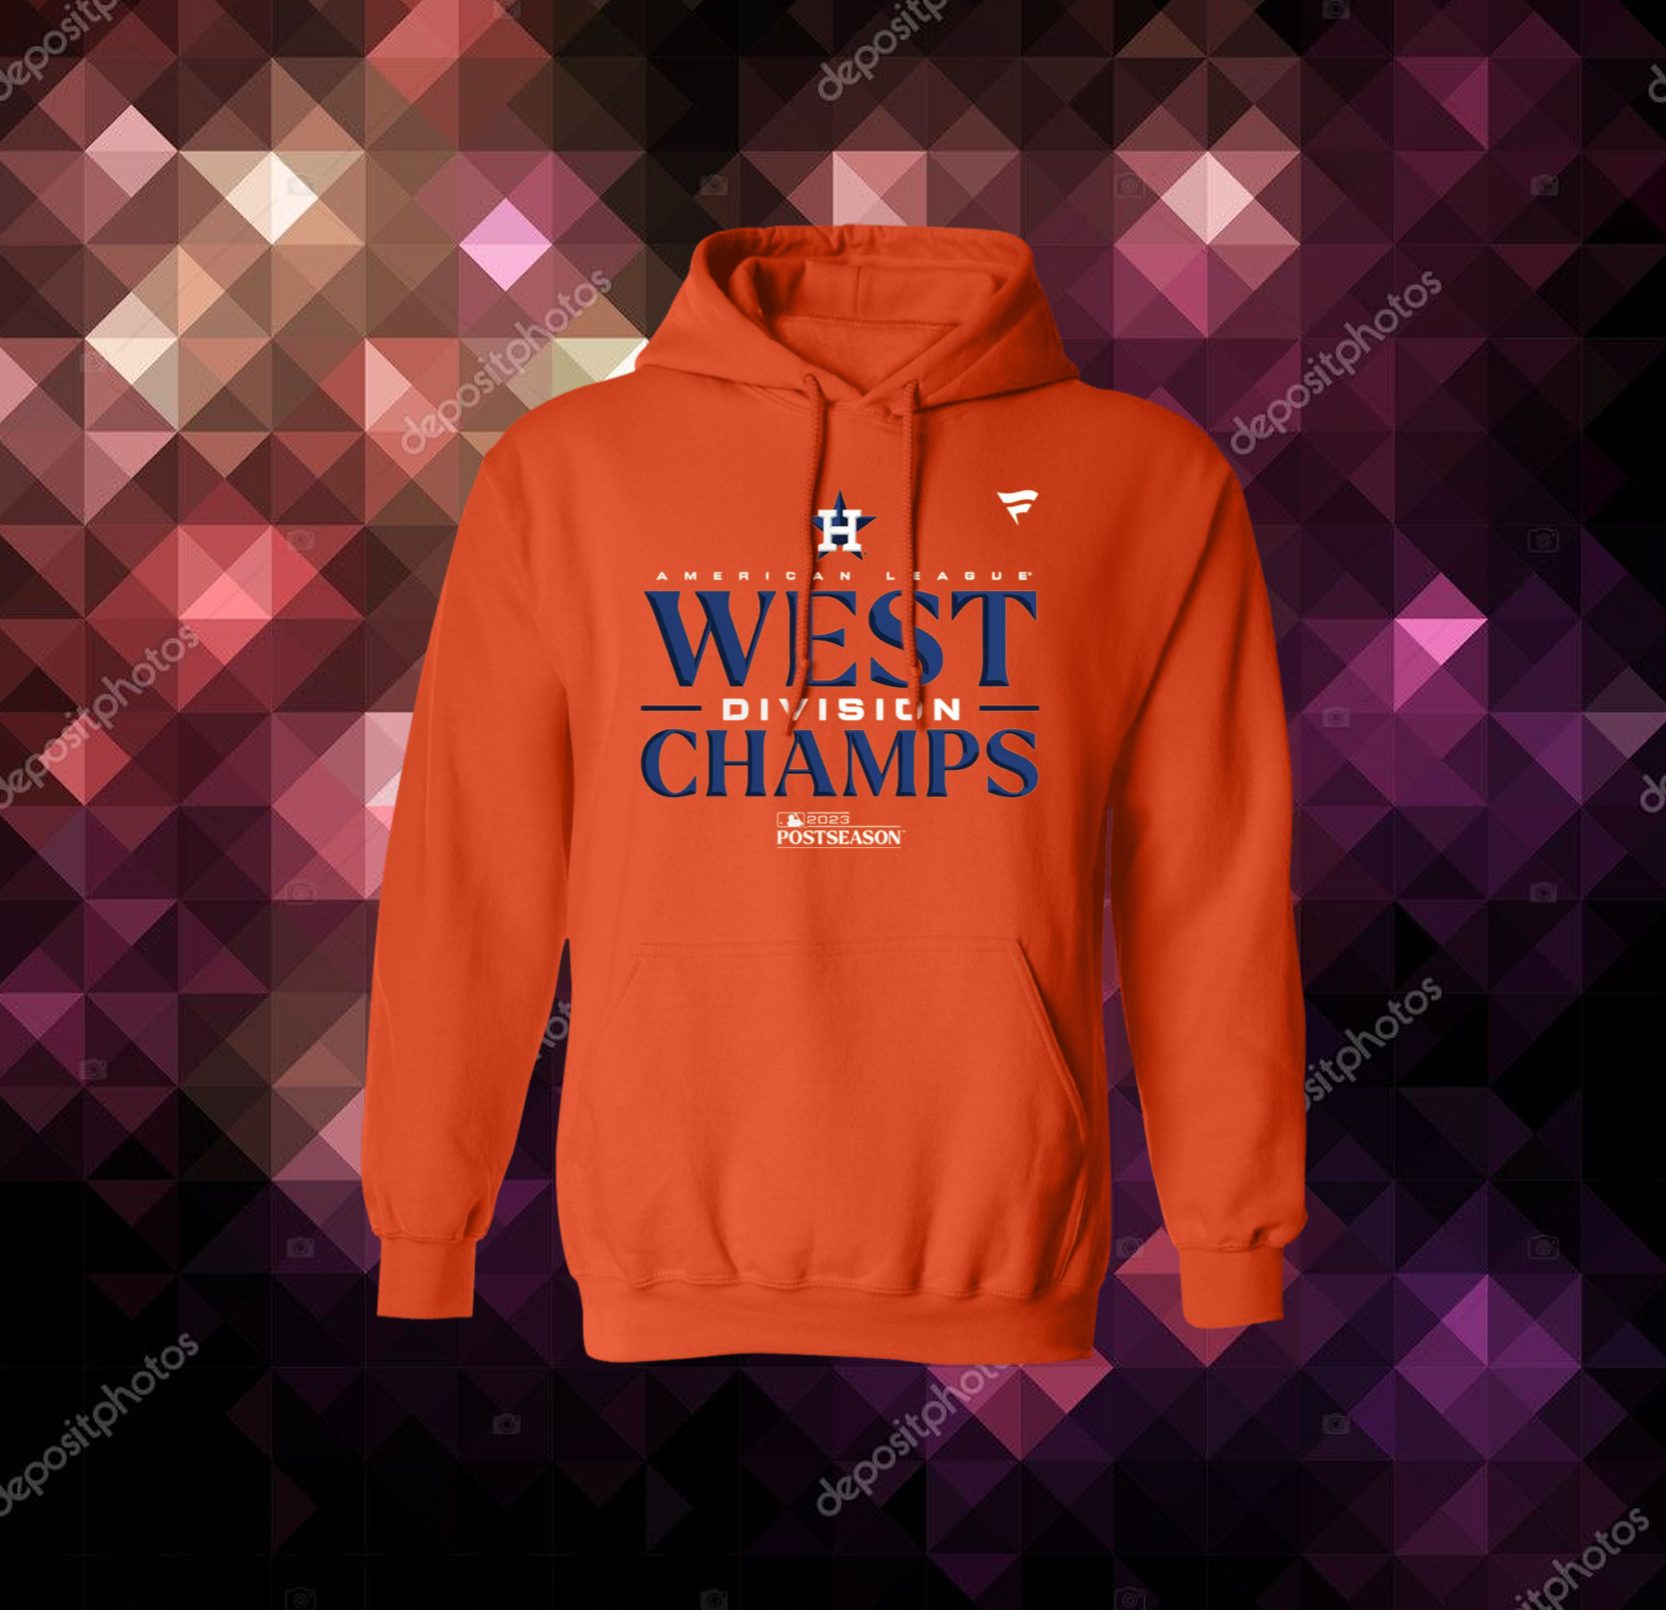 Houston Astros Sweater 